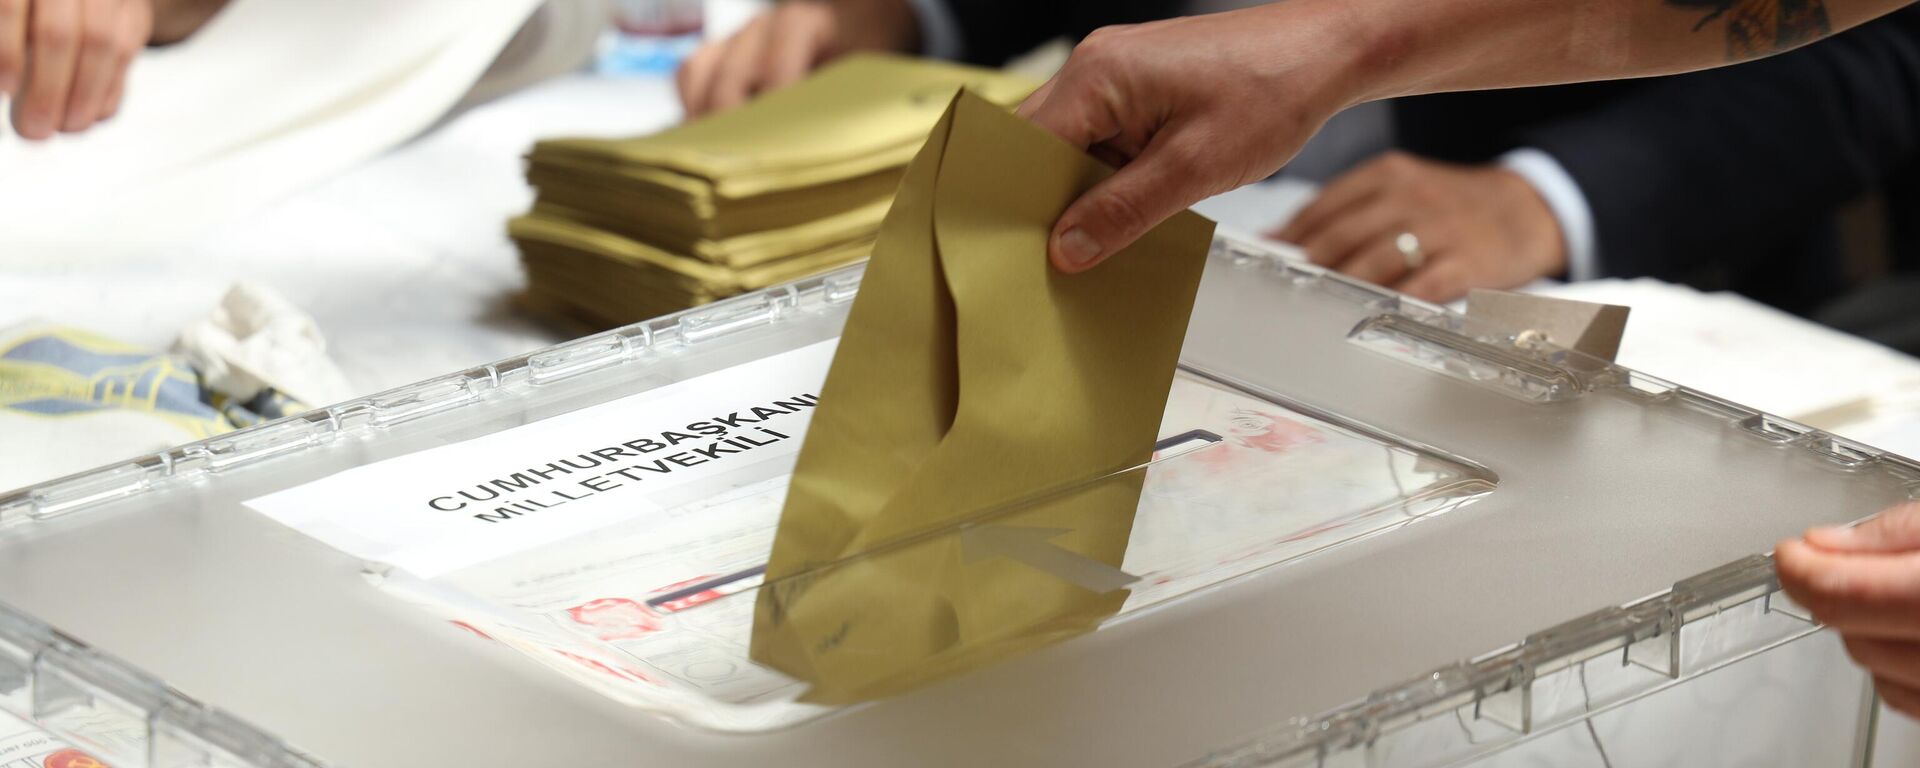 Katar’da yurt dışı seçmen kütüğüne kayıtlı seçmenler, Türkiye'deki Cumhurbaşkanı ve 28. Dönem Milletvekili Genel Seçimi kapsamında oy vermeye başladı. Katar’ın başkenti Doha’da, Türkiye'de 14 Mayıs'ta yapılacak Cumhurbaşkanı ve 28. Dönem Milletvekili Seçimleri için sandık kuruldu.  - Sputnik Türkiye, 1920, 13.05.2023